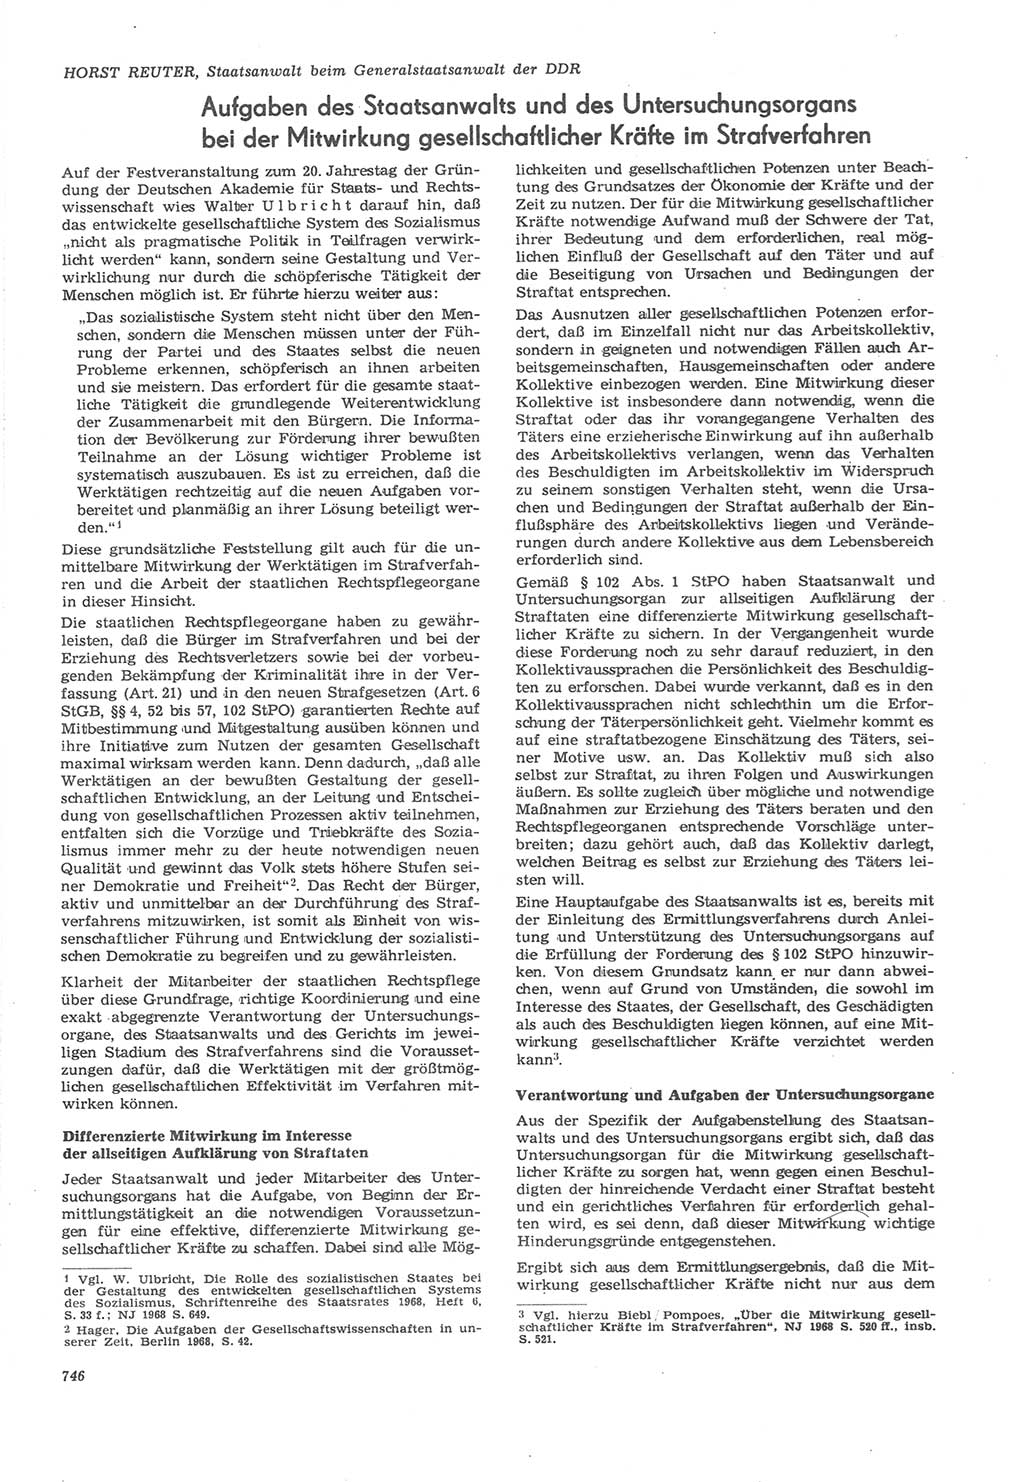 Neue Justiz (NJ), Zeitschrift für Recht und Rechtswissenschaft [Deutsche Demokratische Republik (DDR)], 22. Jahrgang 1968, Seite 746 (NJ DDR 1968, S. 746)